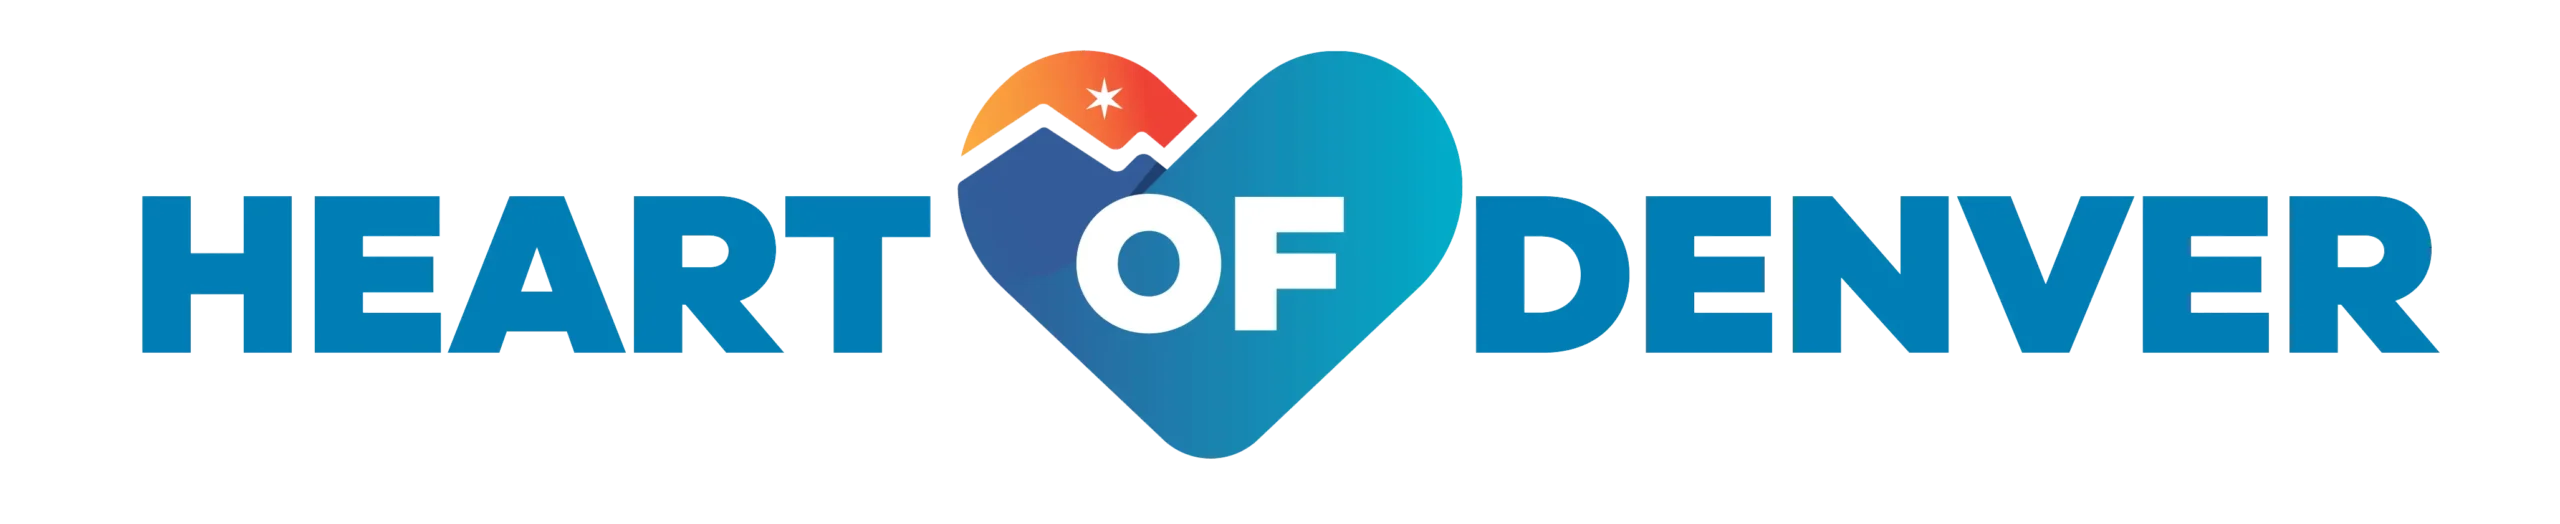 Heart of Denver logo